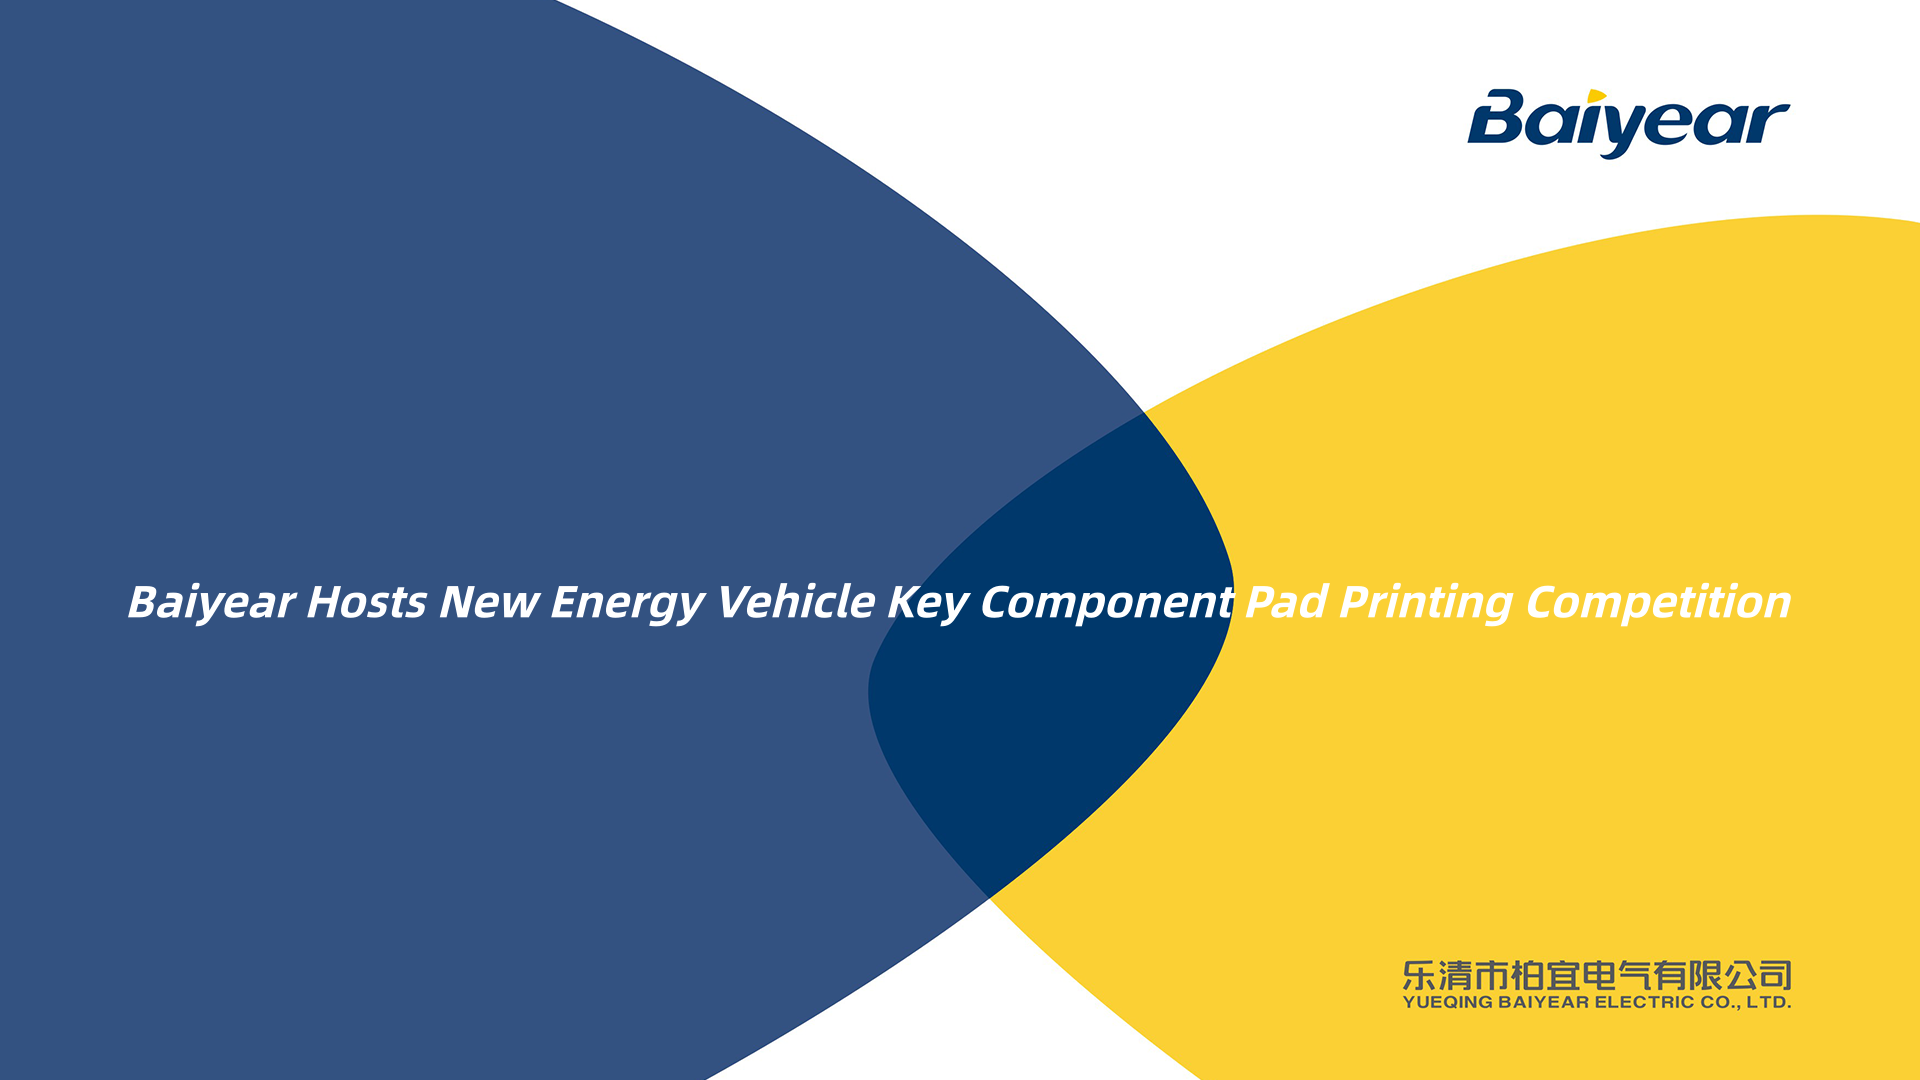 Yueqing Baiyear Electronics Co., Ltd. успешно проводит конкурс по тампопечати ключевых компонентов транспортных средств на новой энергии